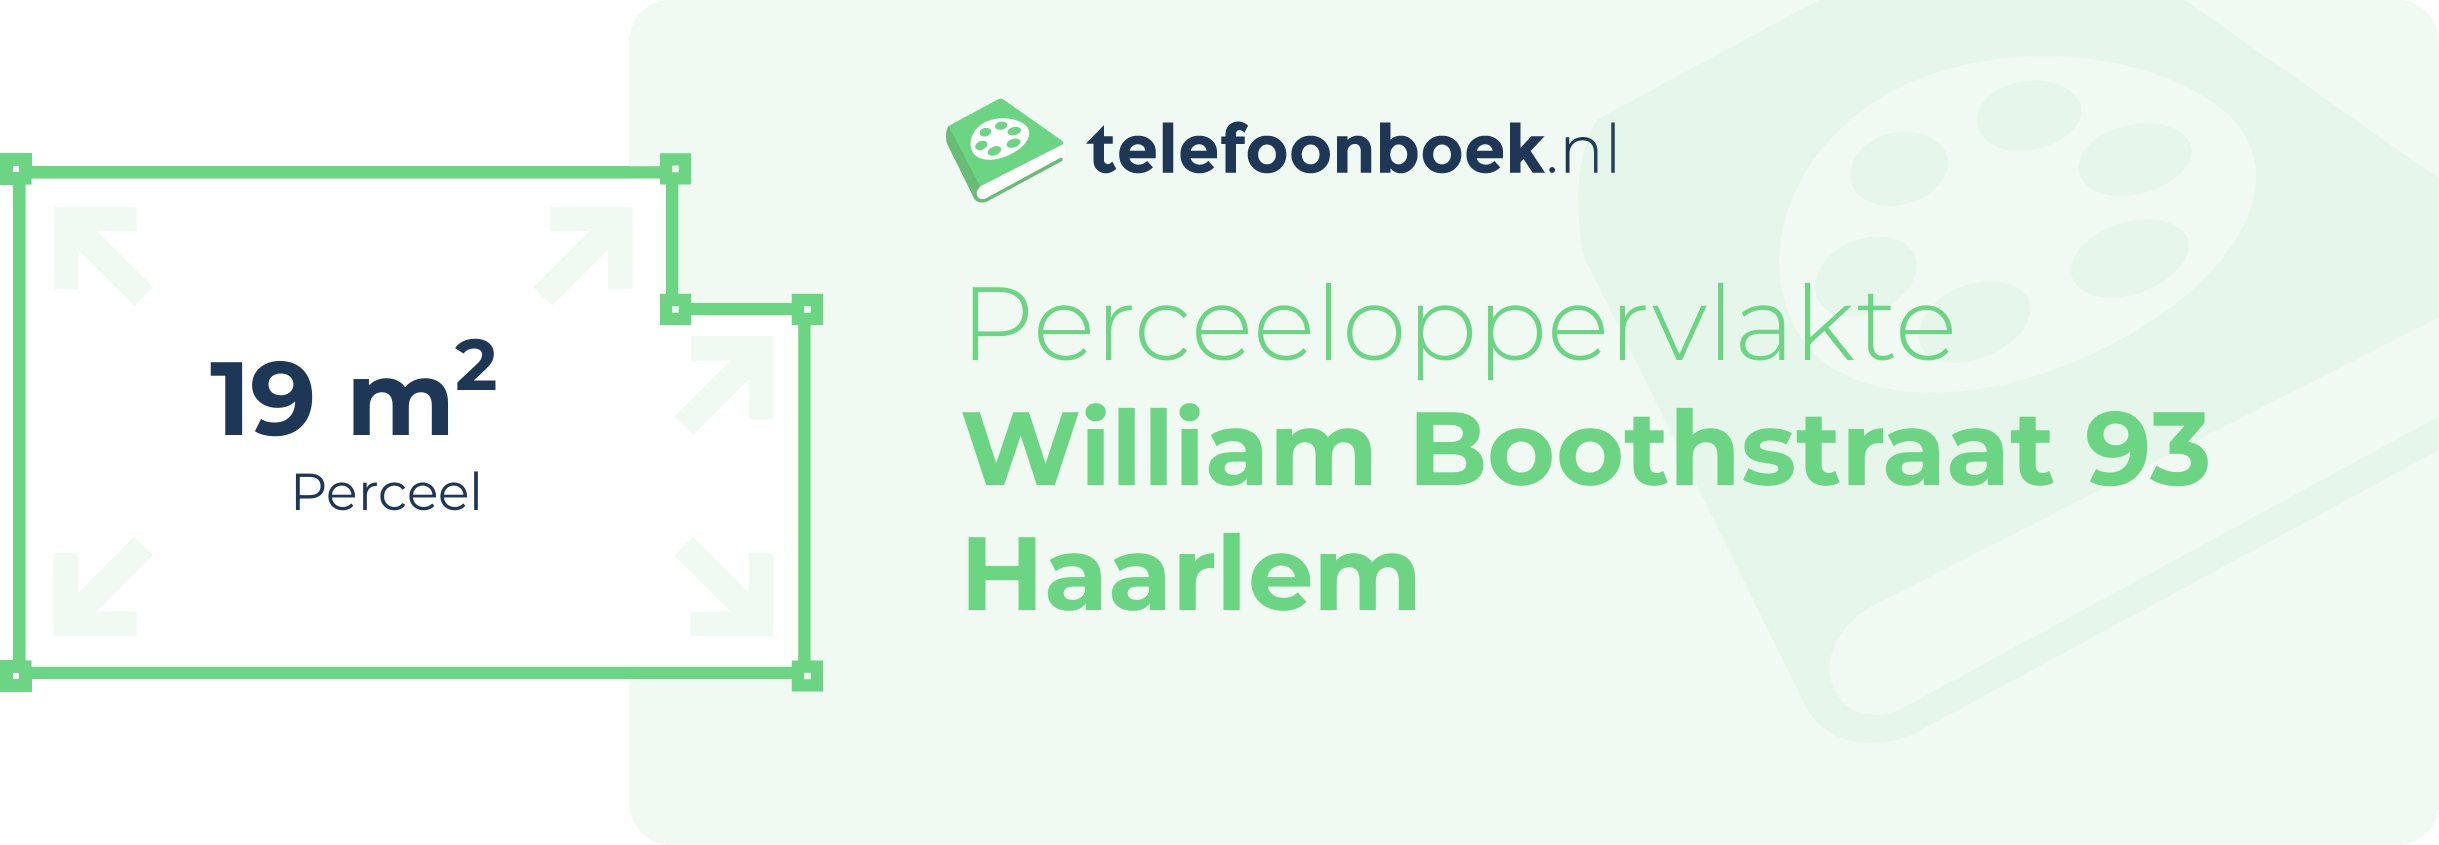 Perceeloppervlakte William Boothstraat 93 Haarlem